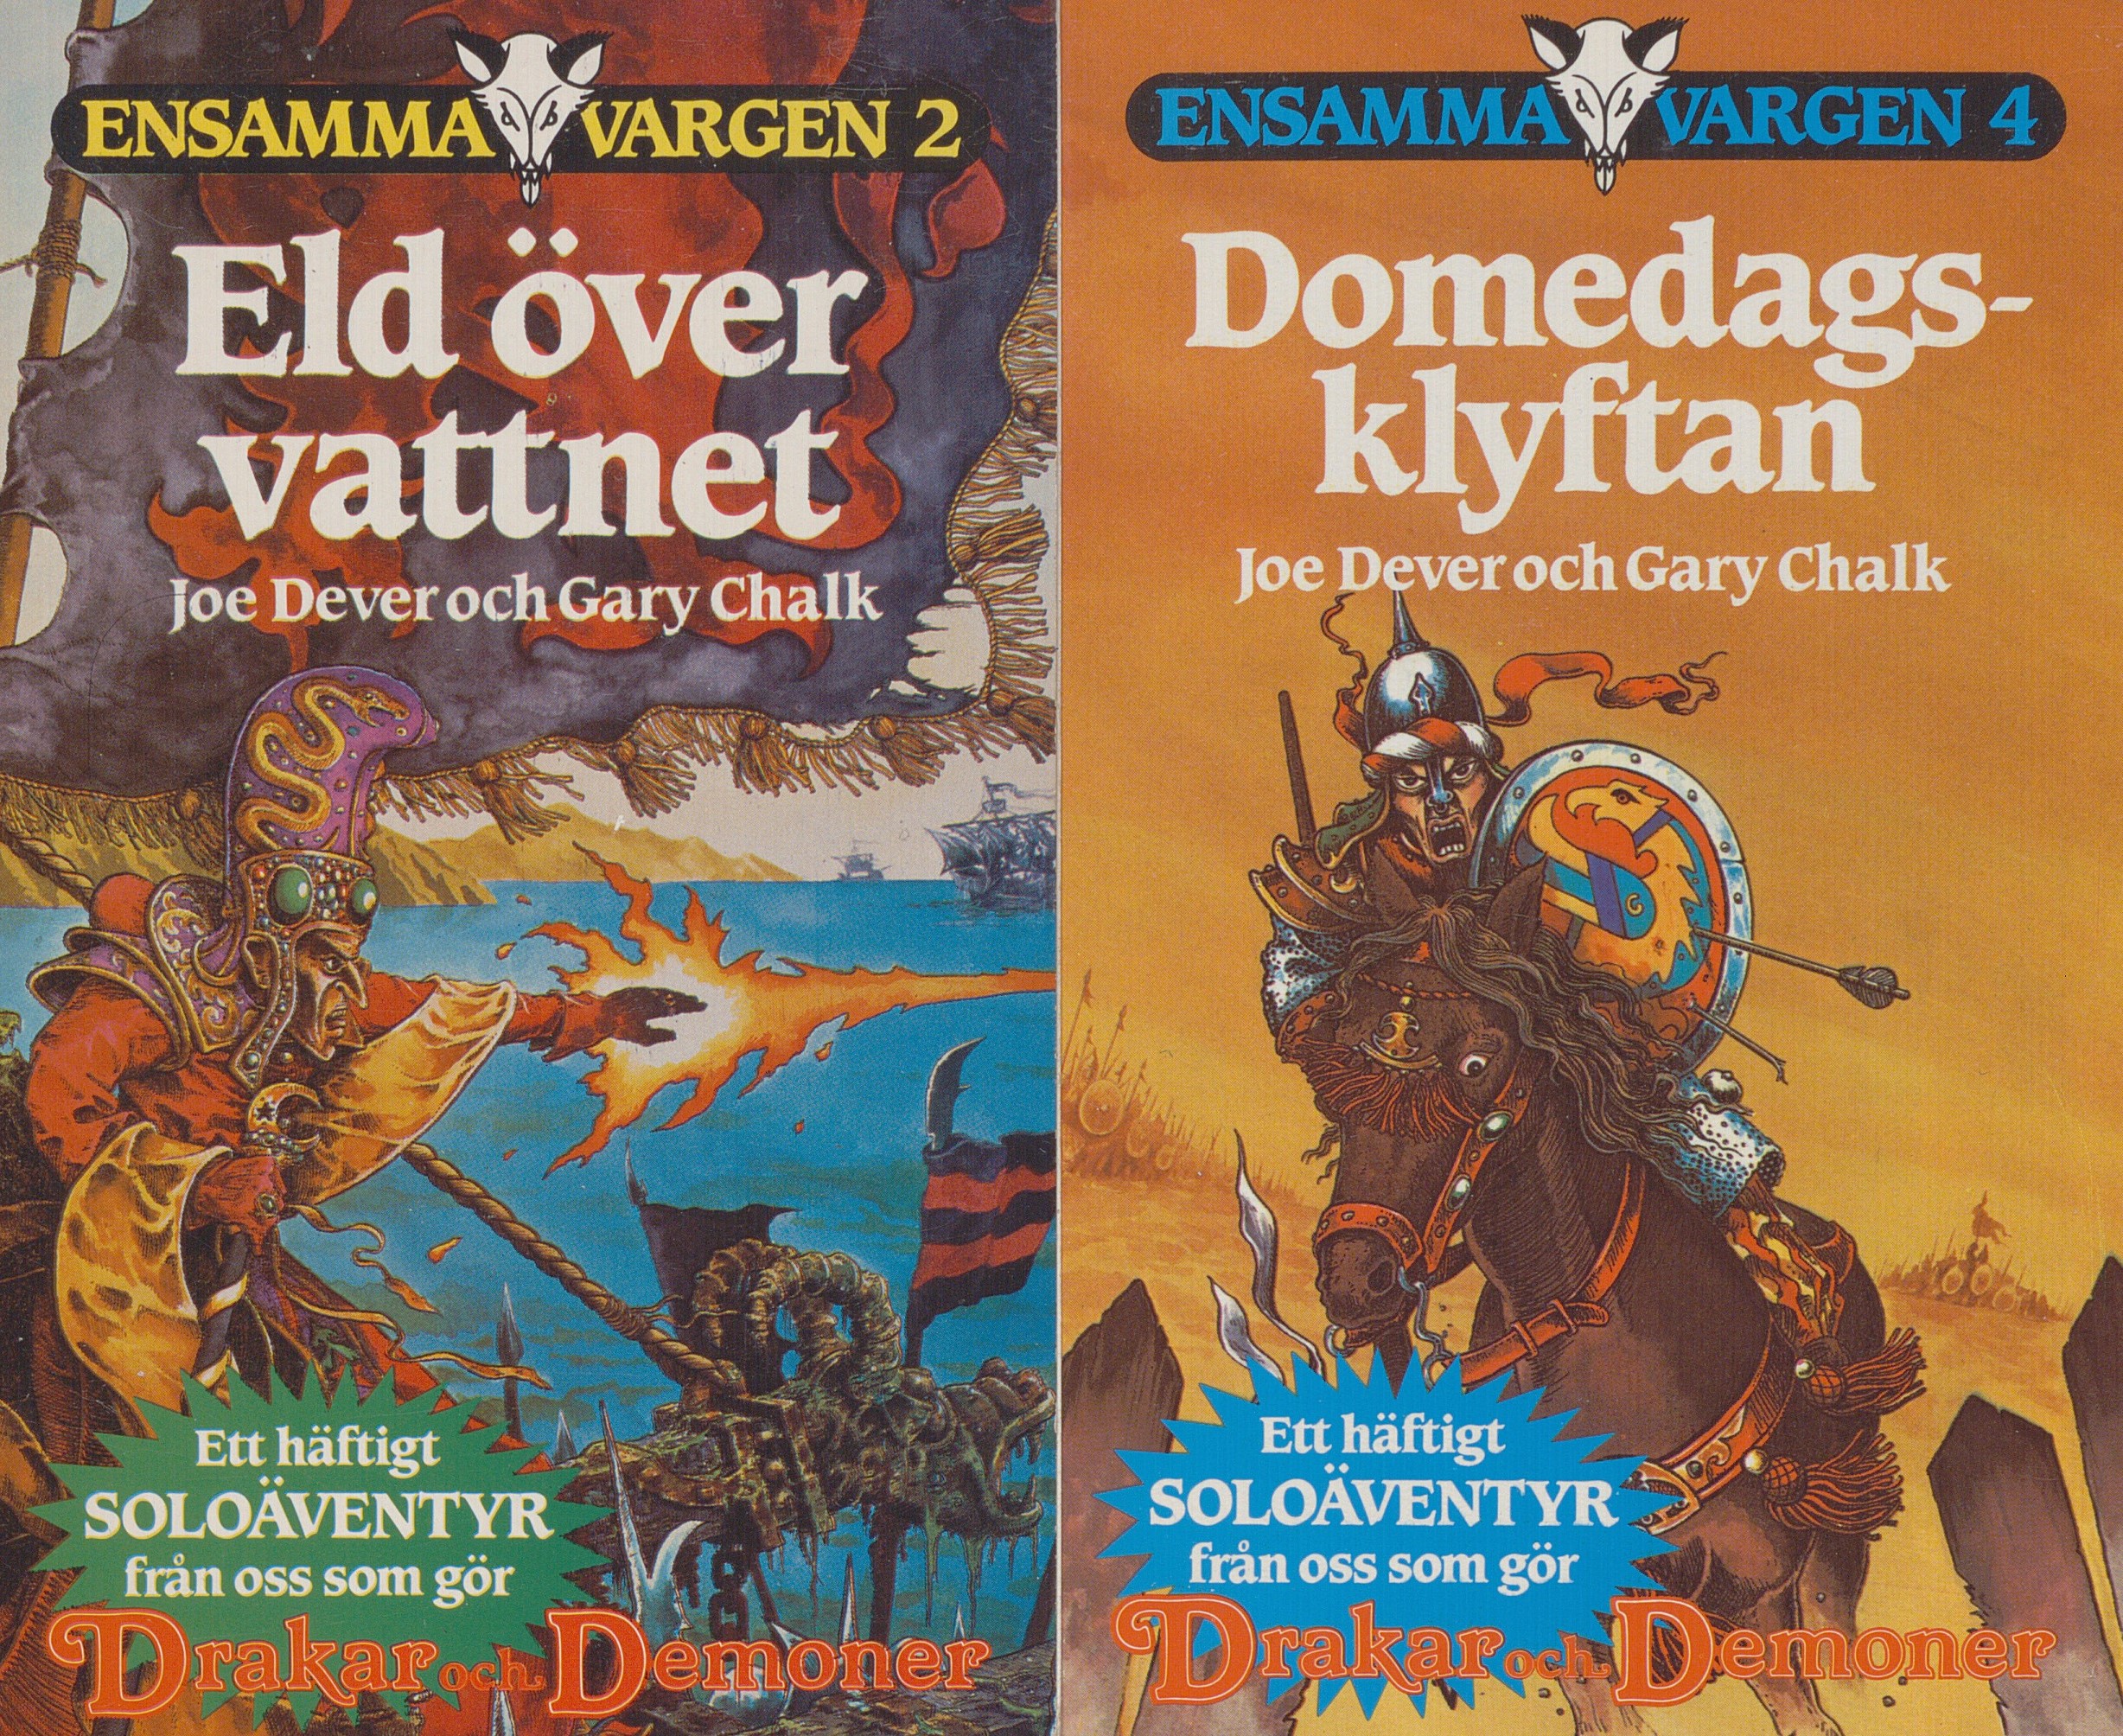 På vänster omslag en magiker på ett skepp som skjuter eld, på högra omslaget en krigare till häst med lans, spetsig hjälm och rund sköld med pilar i.